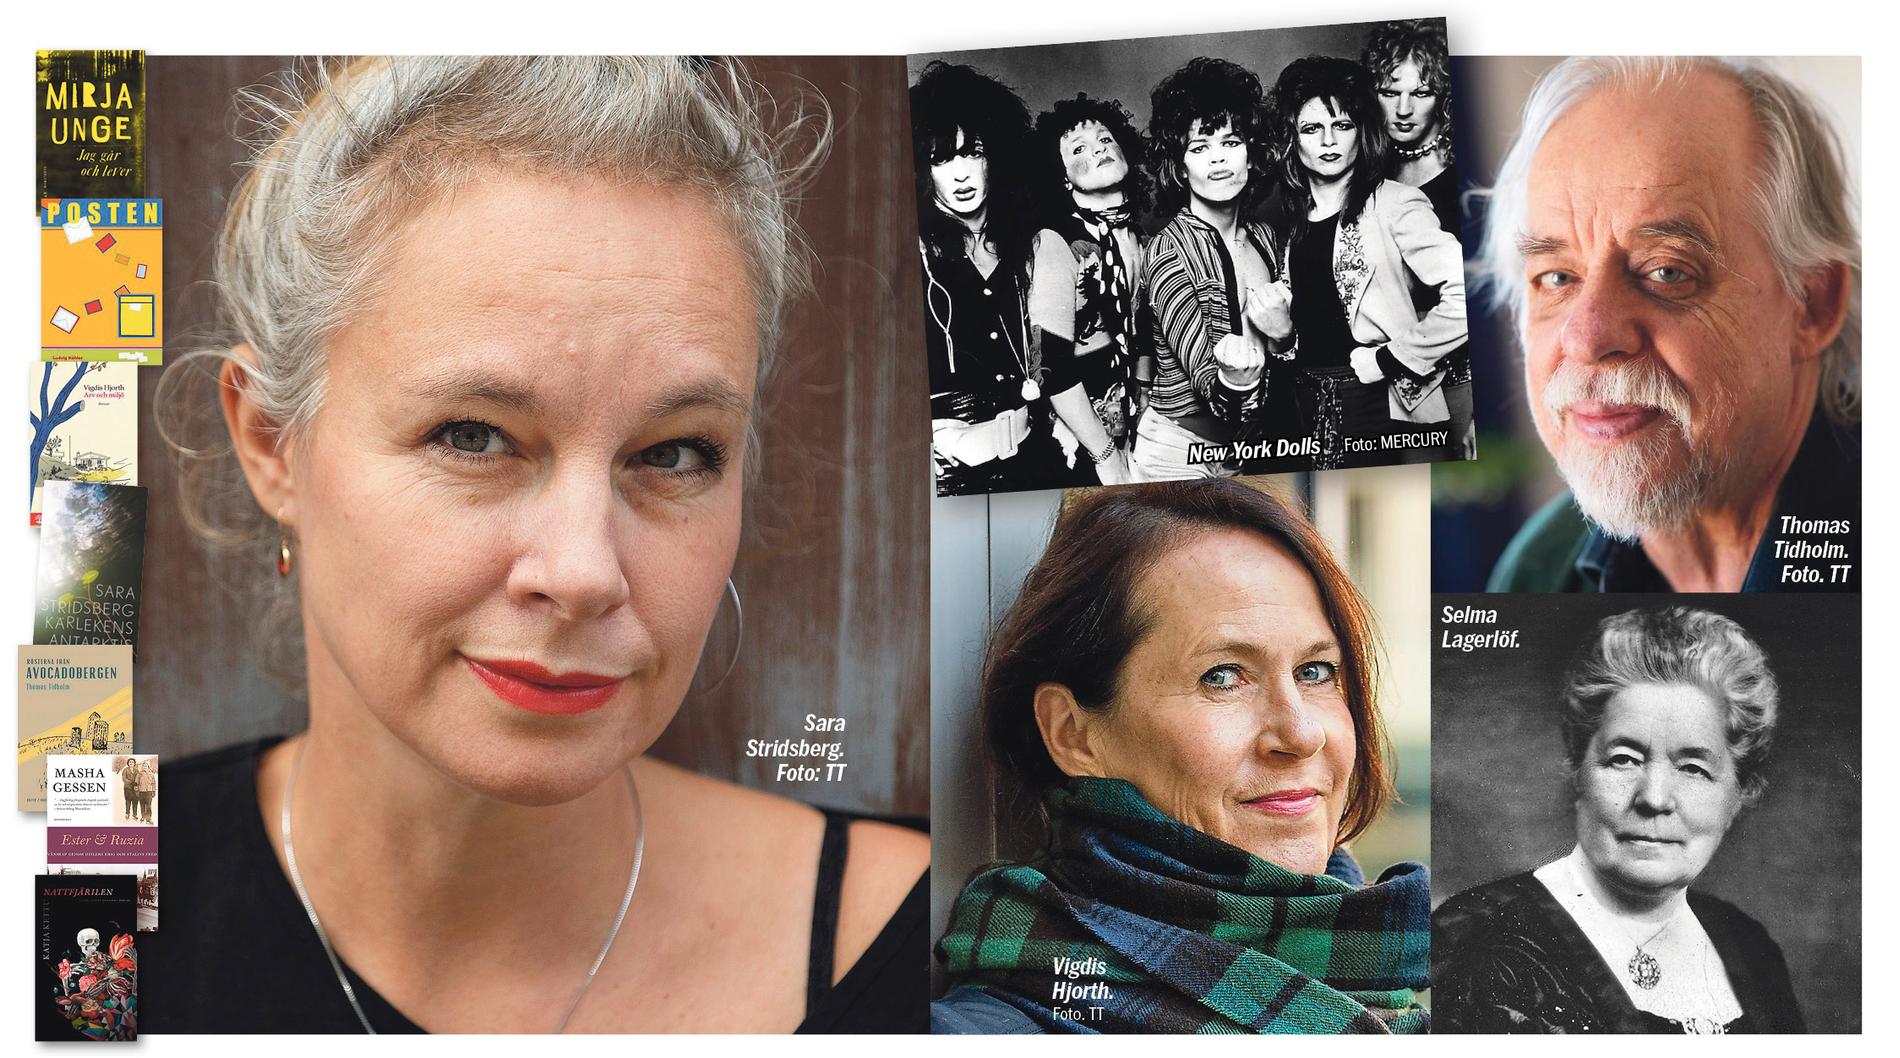 Aftonbladets kritiker tipsar om att lägga Sara Stridsberg, New York Dolls, Vigdis Hjorth, Thomas Tidholm, Selma Lagerlöf med flera i julklappssäcken. 